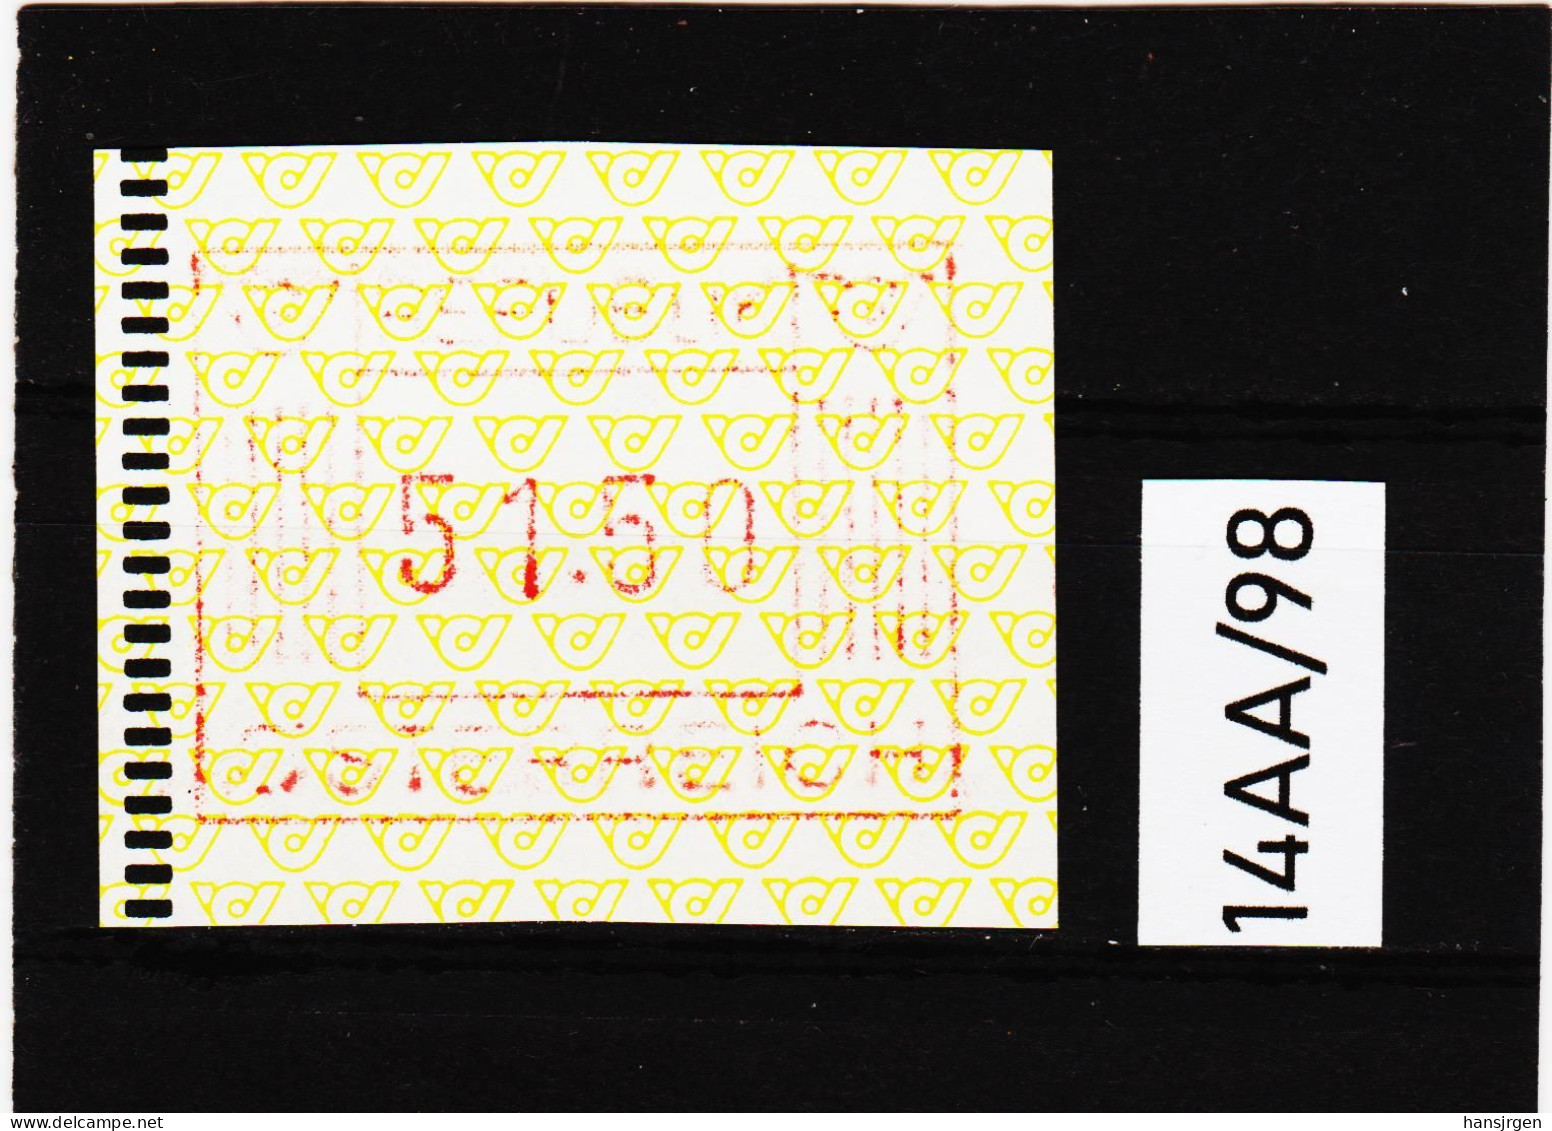 14AA/98  ÖSTERREICH 1983 AUTOMATENMARKEN 1. AUSGABE  51,50 SCHILLING   ** Postfrisch - Automatenmarken [ATM]